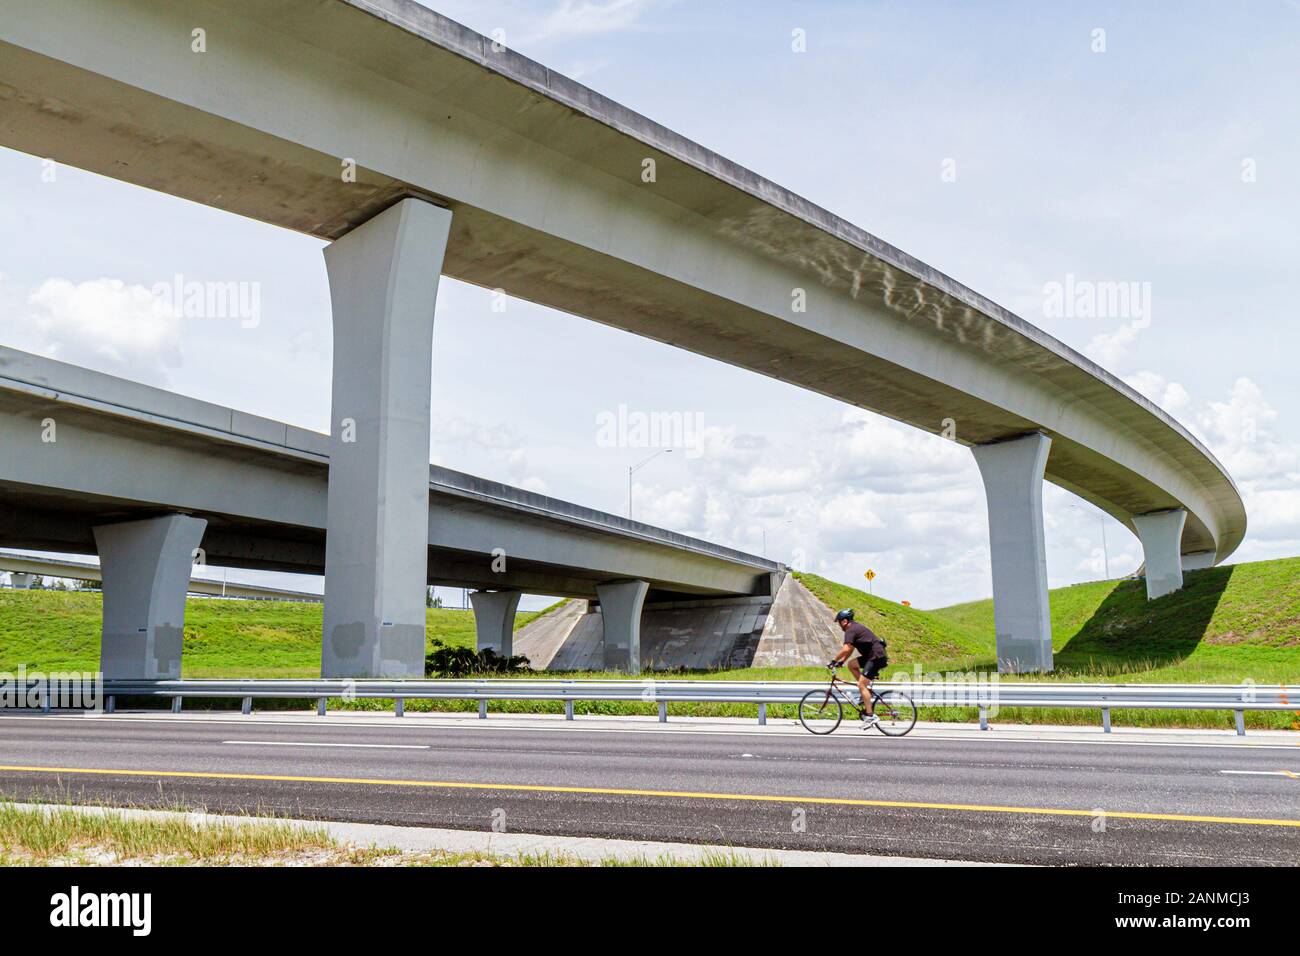 Fort Ft. Lauderdale Florida, Sunrise, Interstate 75, I 75, erhöhte Autobahn, Betonboden, Spannweite, Biker-Radfahrer Fahrrad Fahrräder, Radfahren Radfahren Reiten Stockfoto